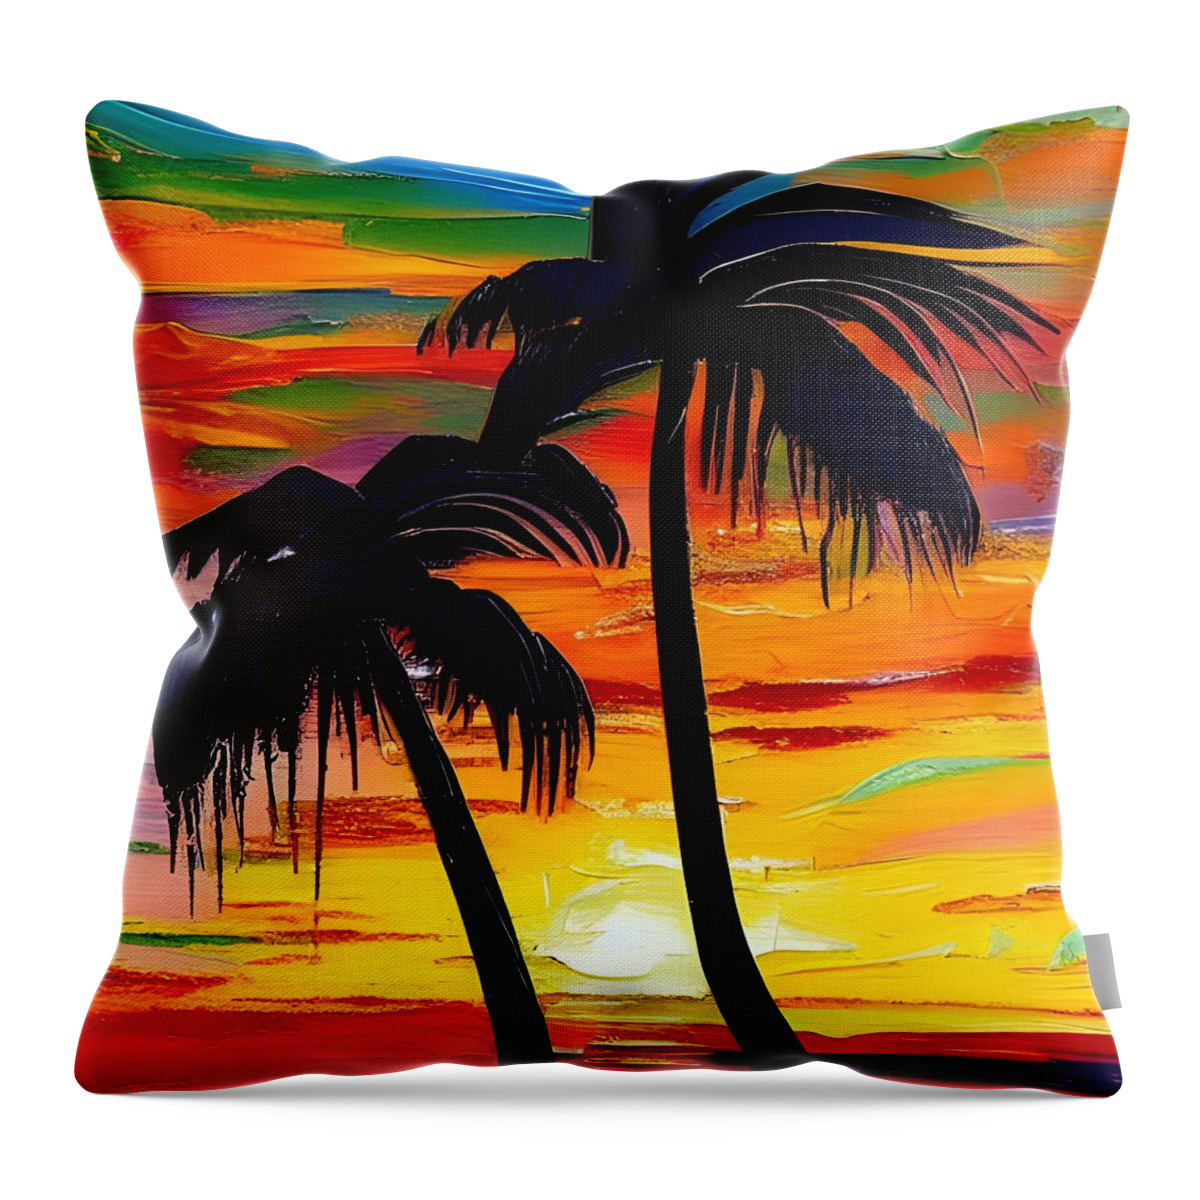 Sunset Throw Pillow featuring the digital art Sunset Palms by Katrina Gunn